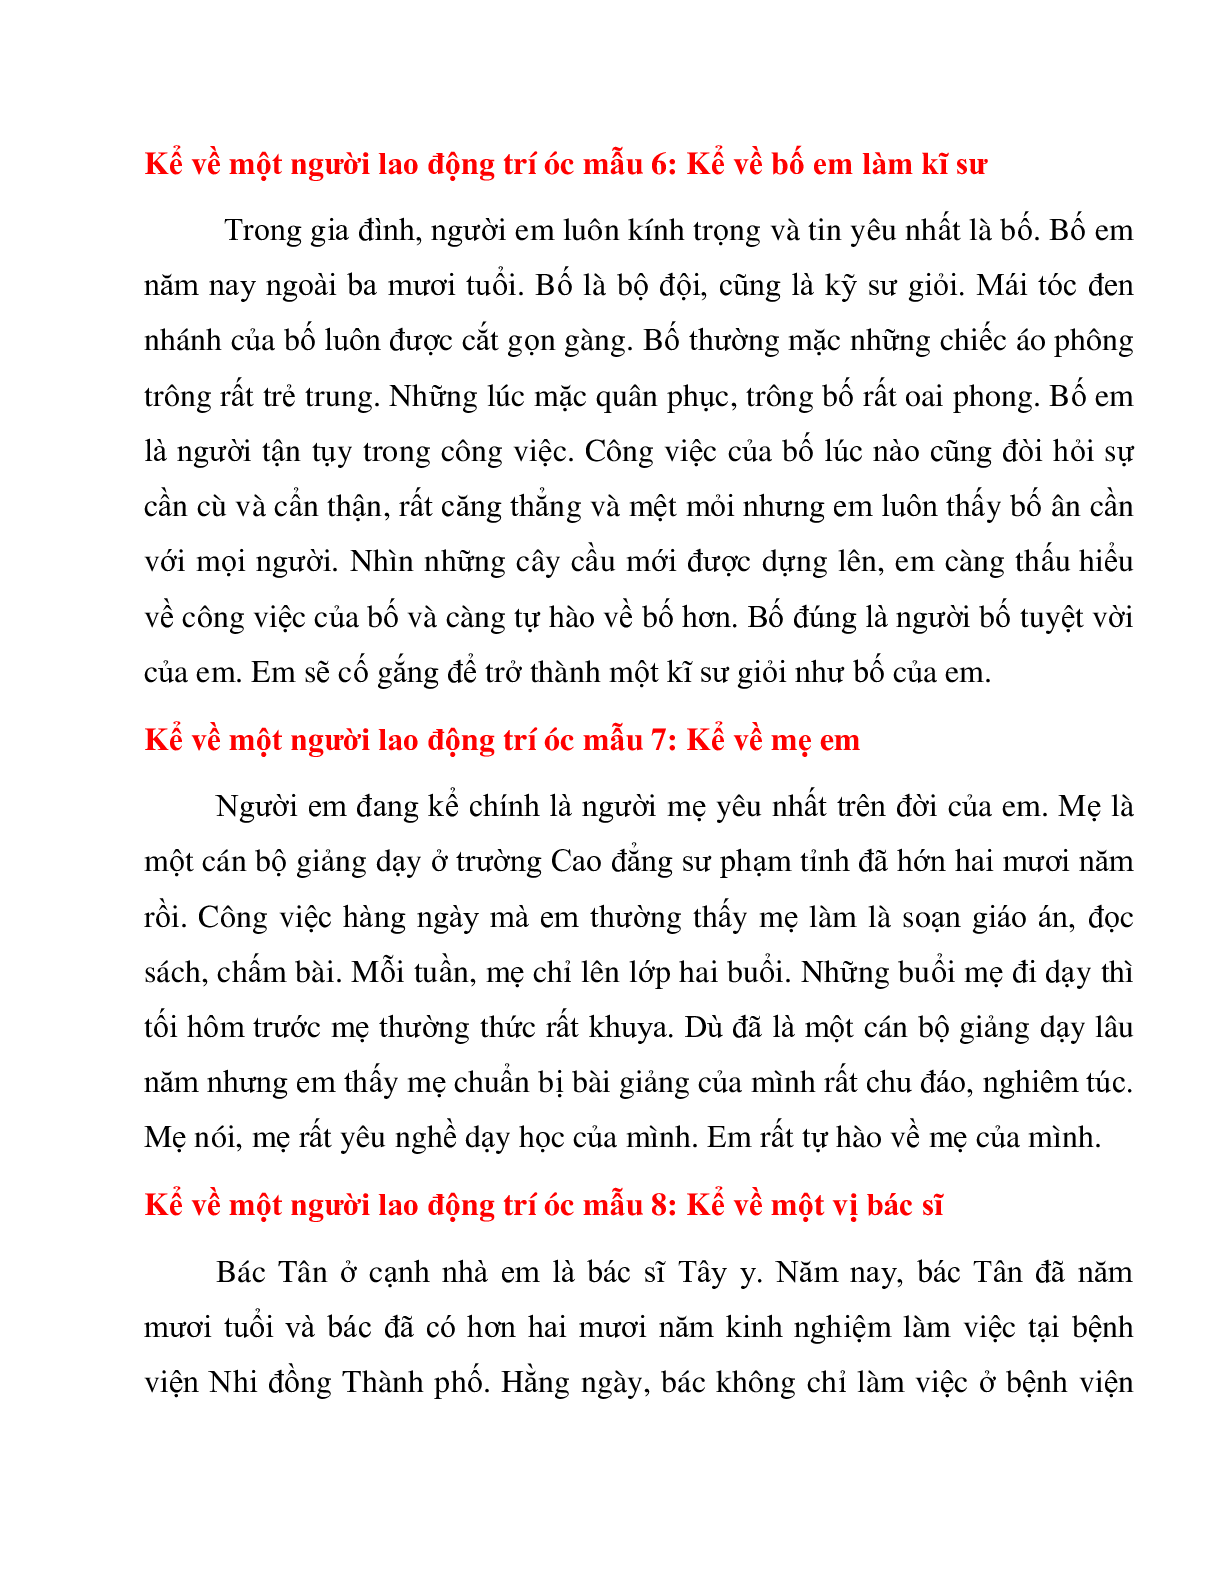 21 bài văn kể về người lao động trí óc môn Tiếng Việt lớp 3 (trang 4)